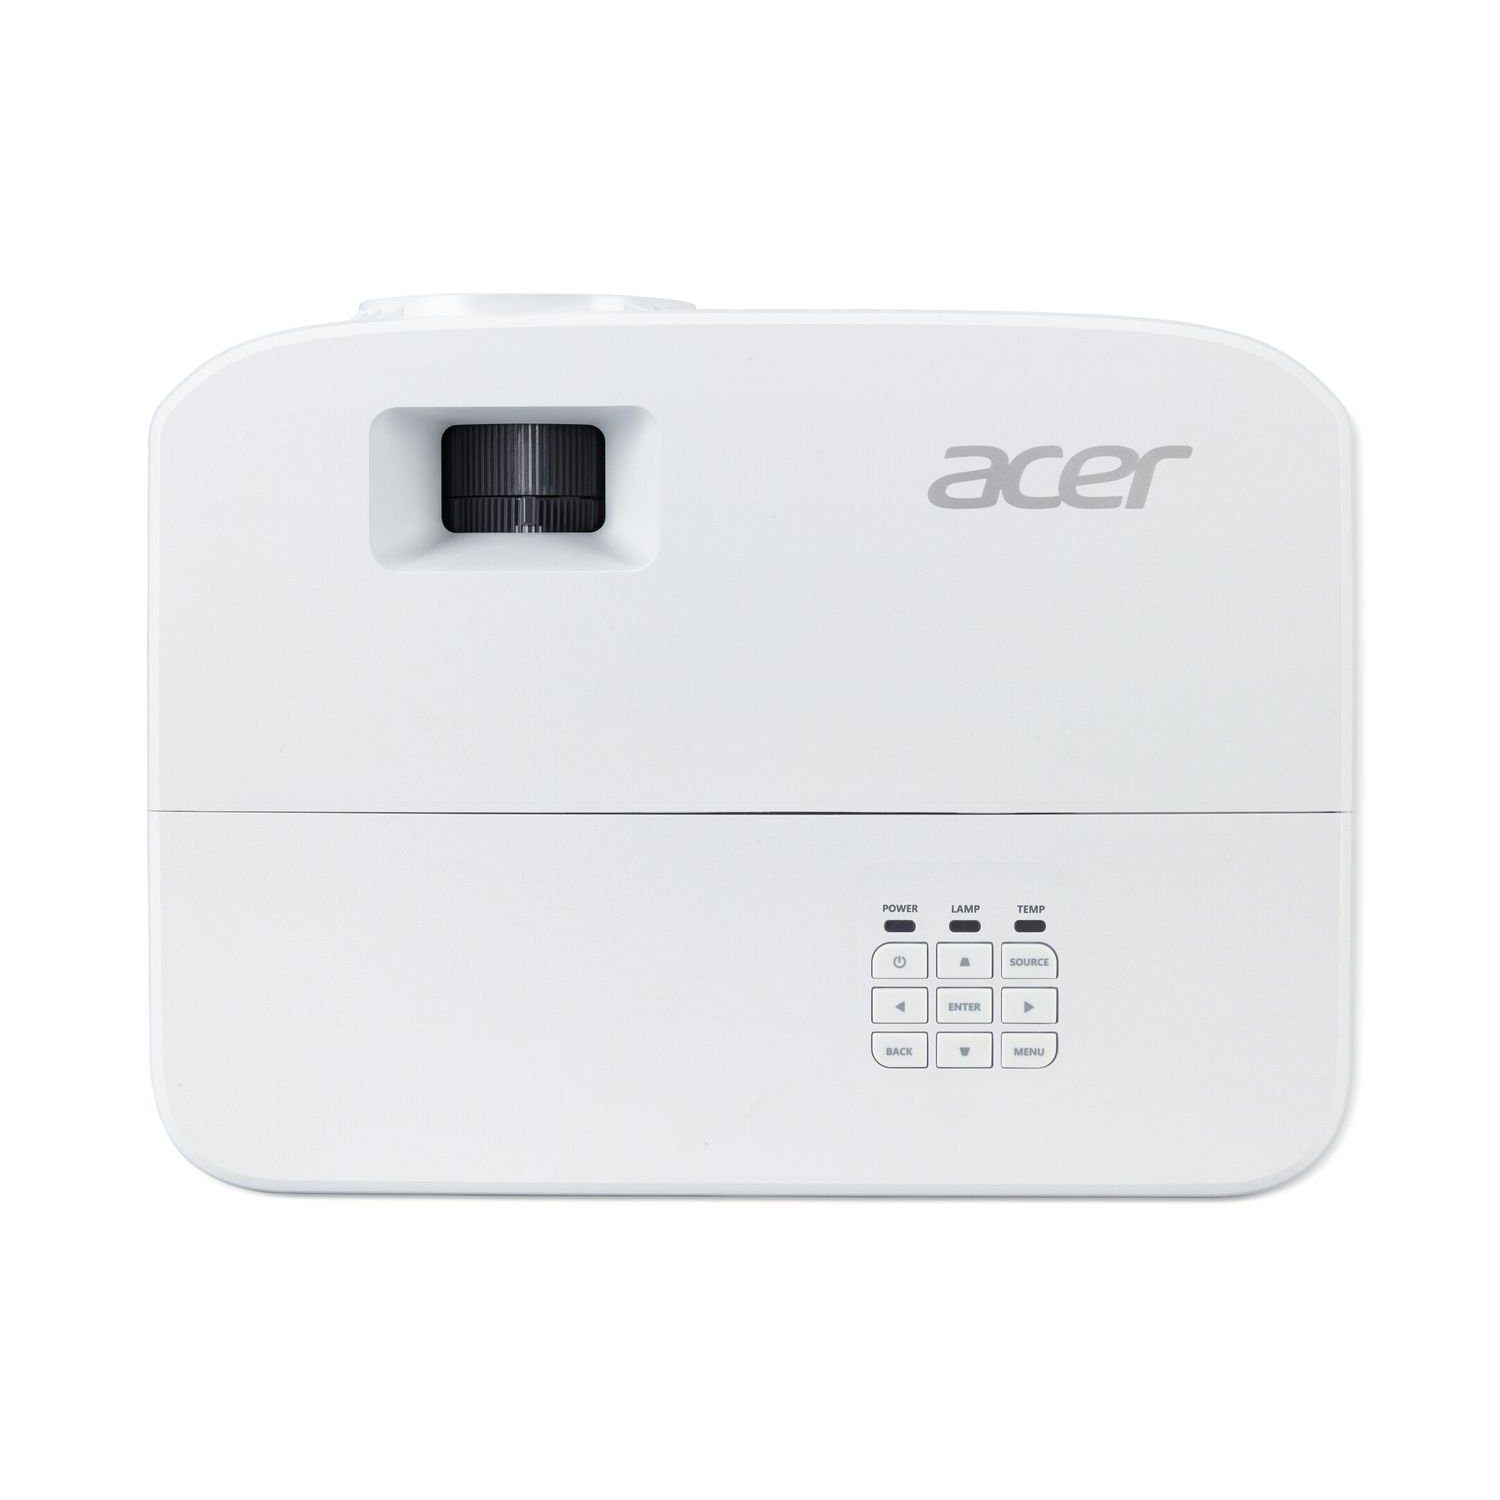 Acer (4500 P1257i lm, 1024 768 20000:1, x px) Beamer